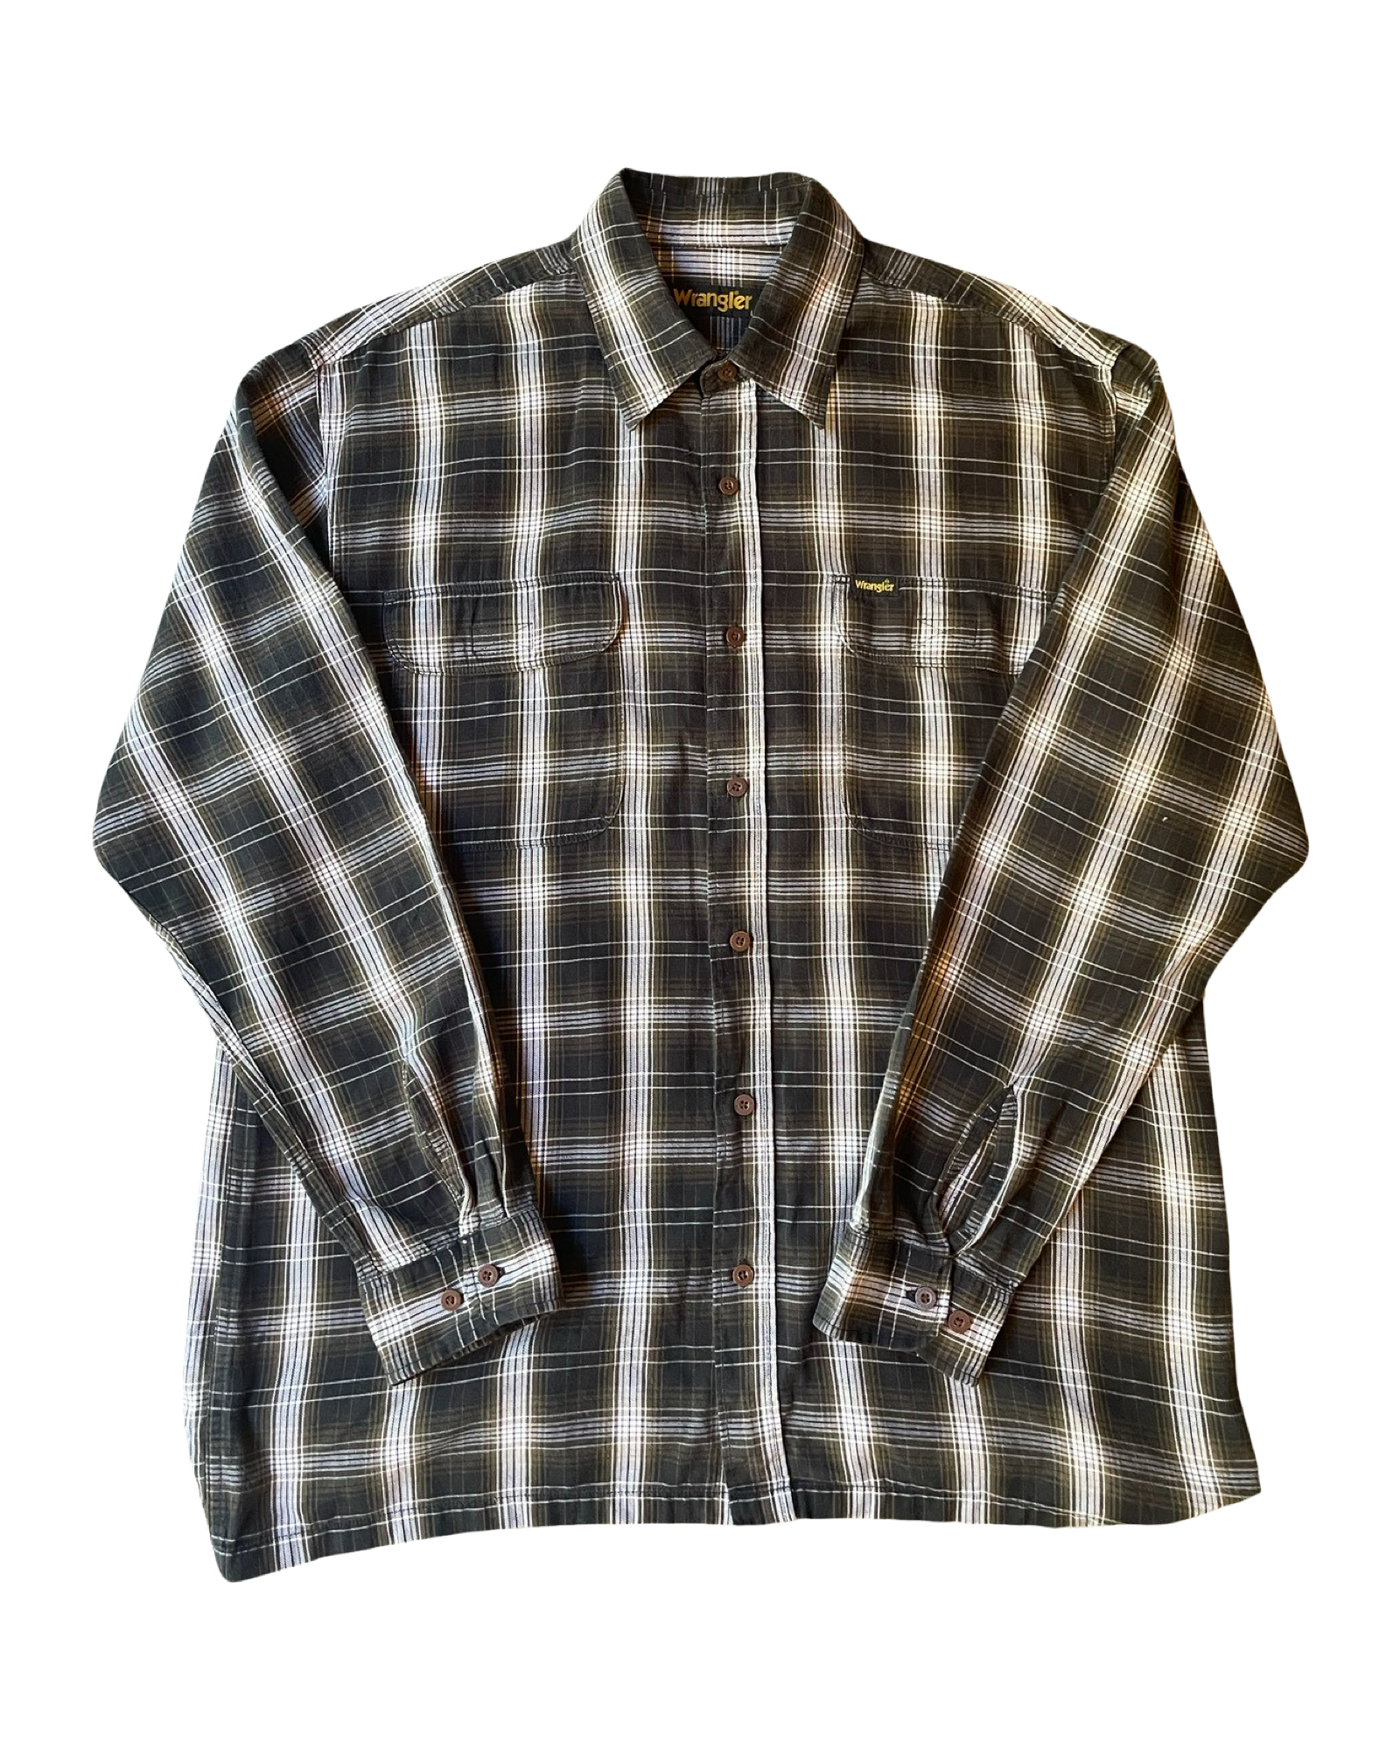 Vintage Wrangler Check Shirt